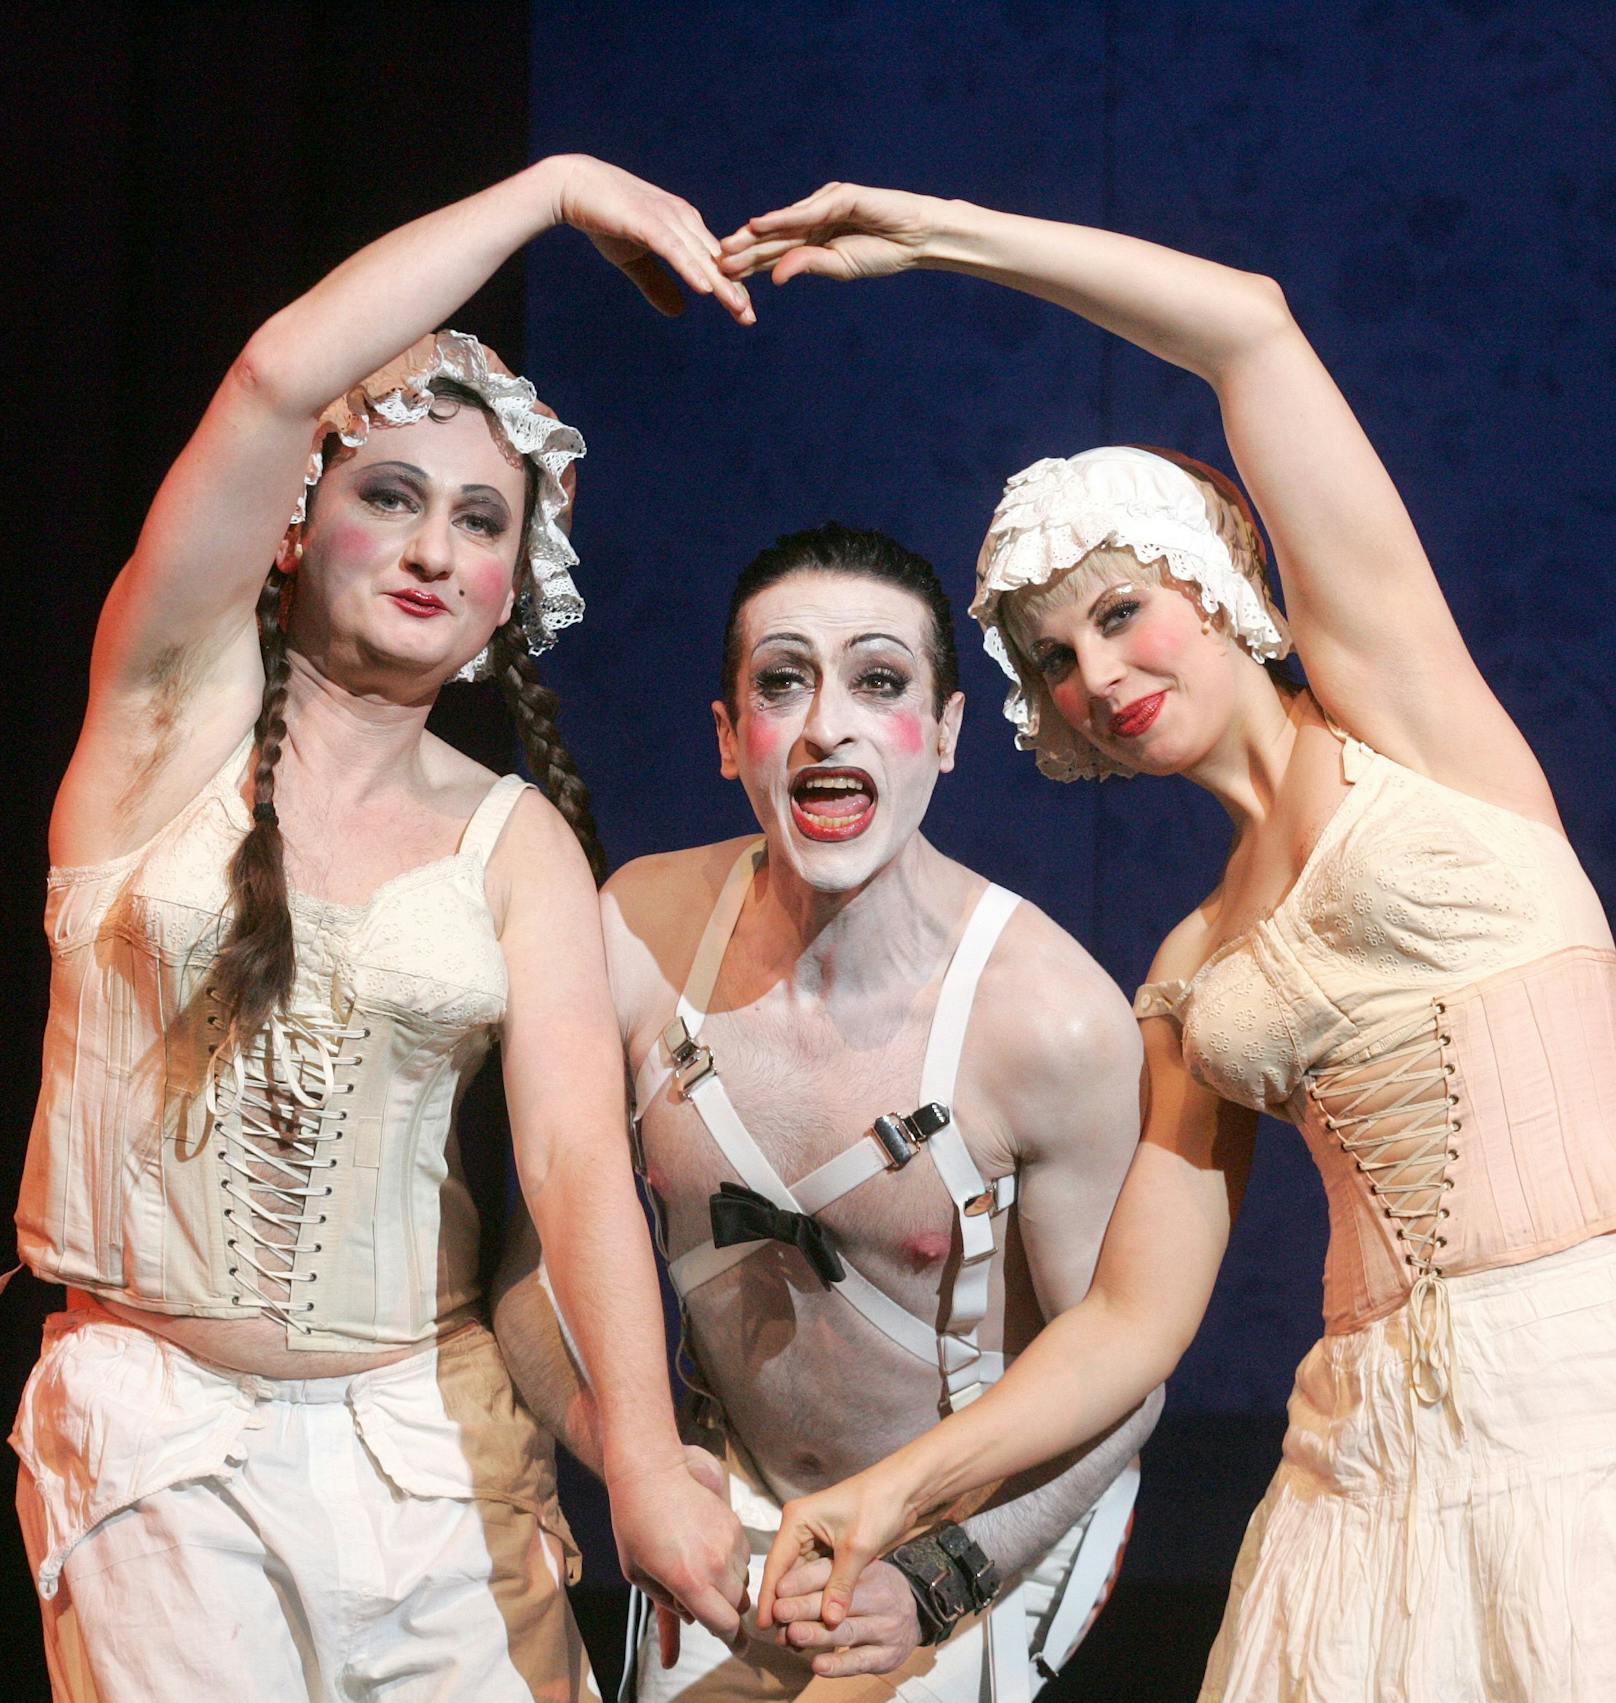 Andy Hallwaxx (llinks) als Horny, Marcello de Nardo als Conferencier und Doris Weiner als Helga in der Fotoprobe zu  "Cabaret" im Wiener Volkstheater, 2007.